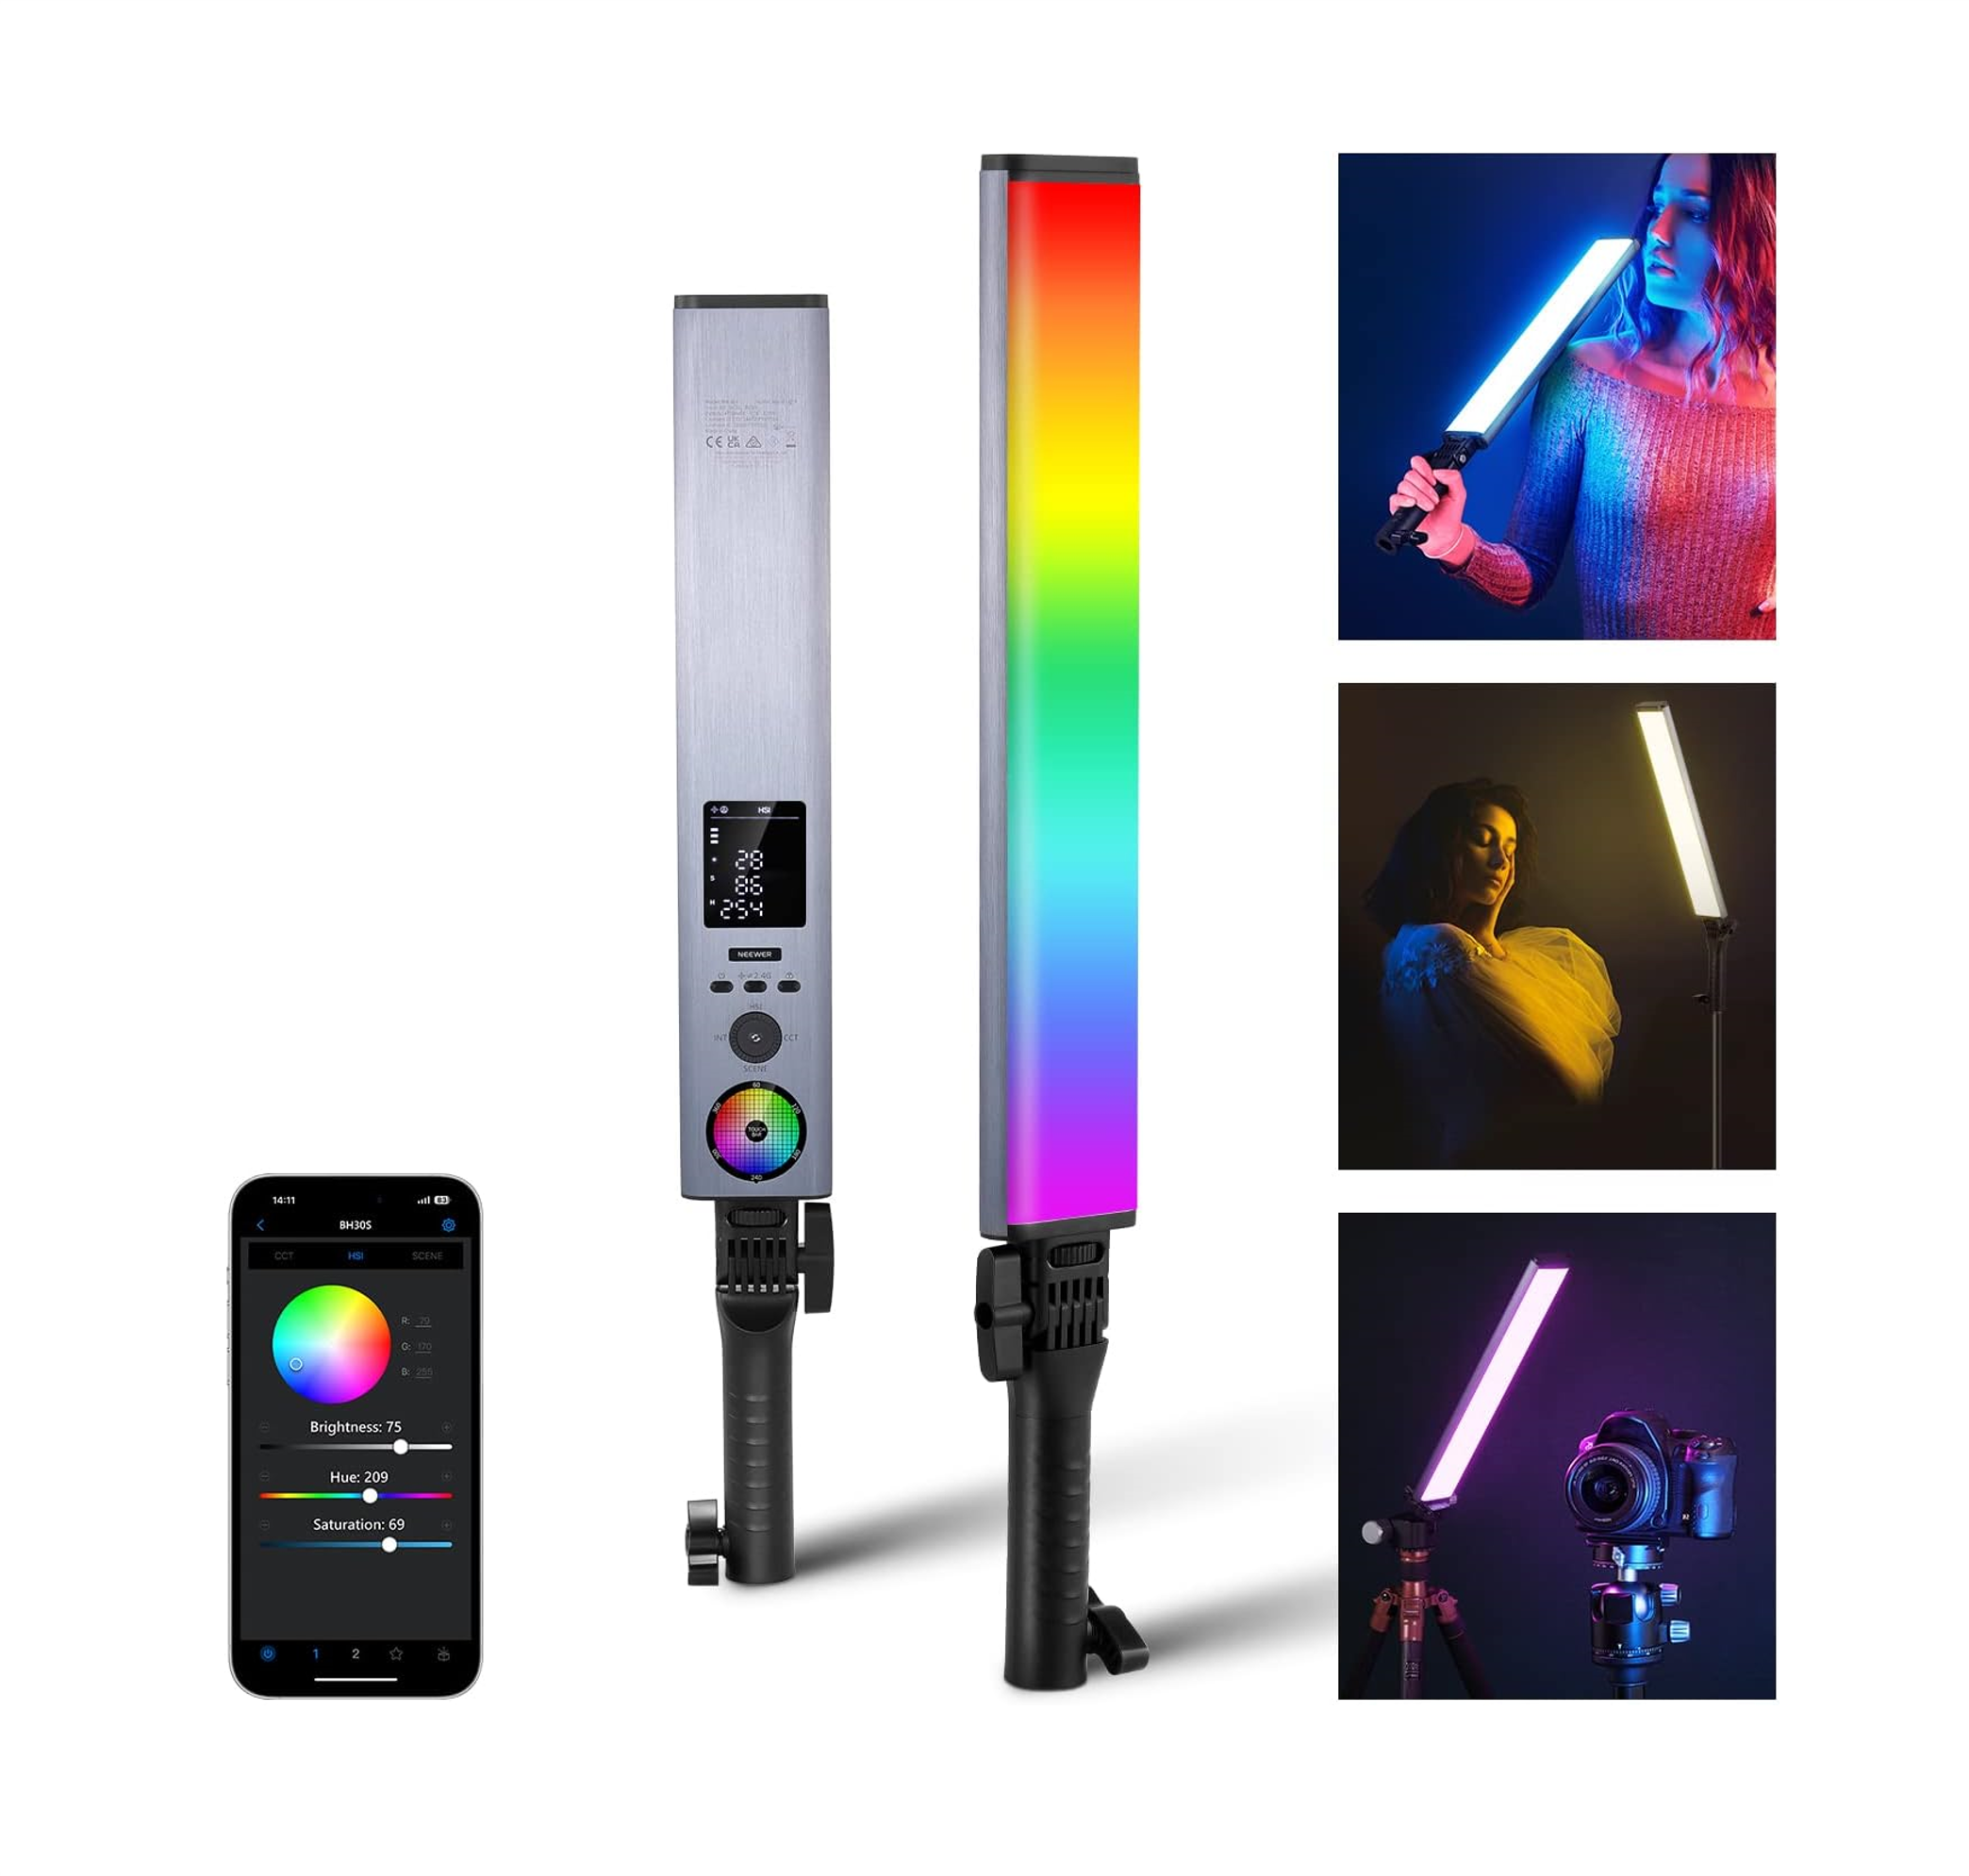 Neewer Luz LED RGB176 con control de aplicación – photostore.sv